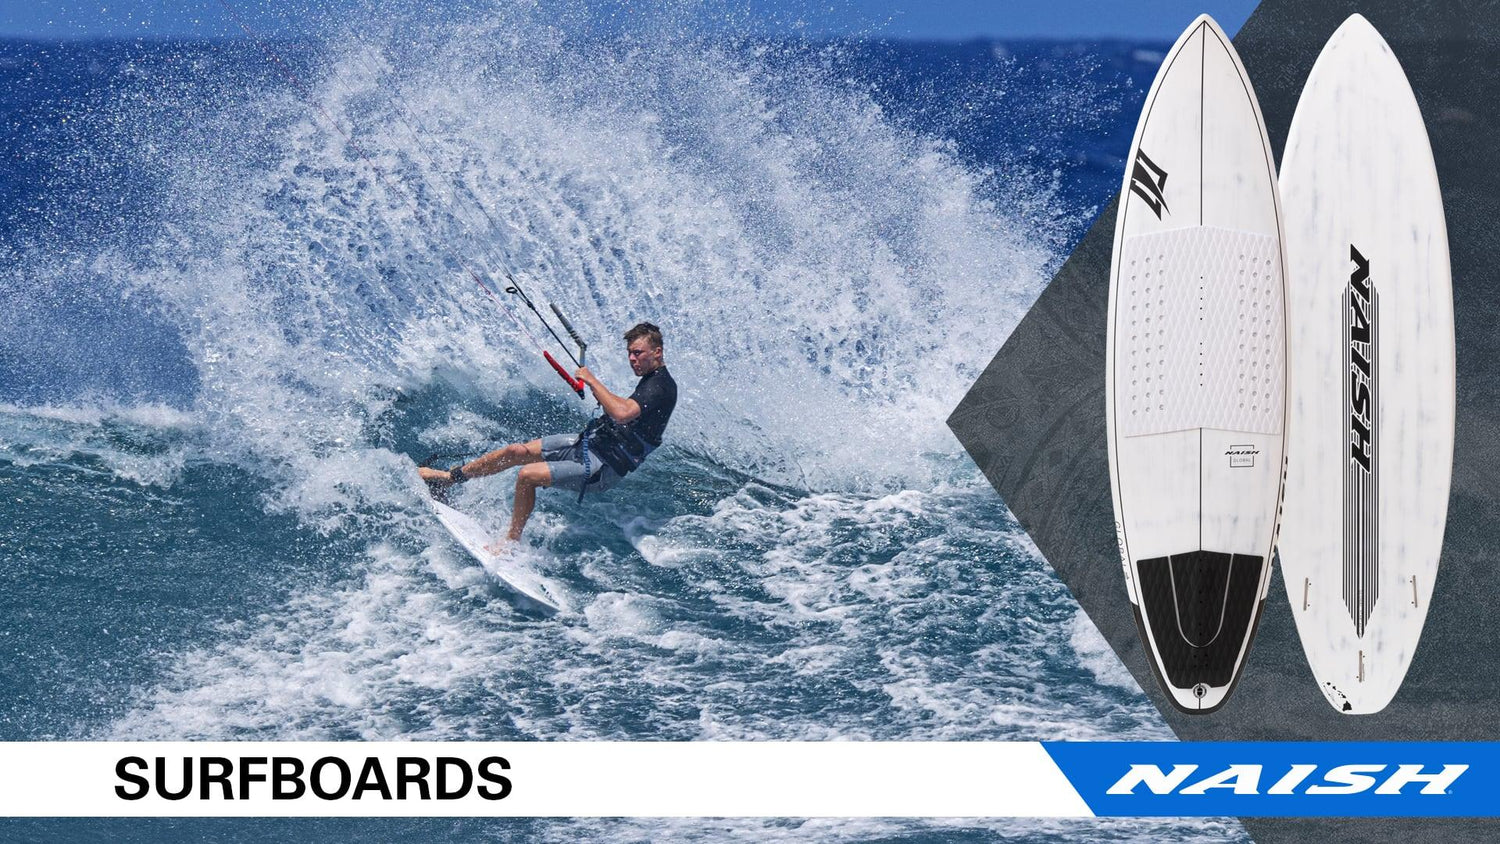 NEW Naish Surfboards - Naish.com